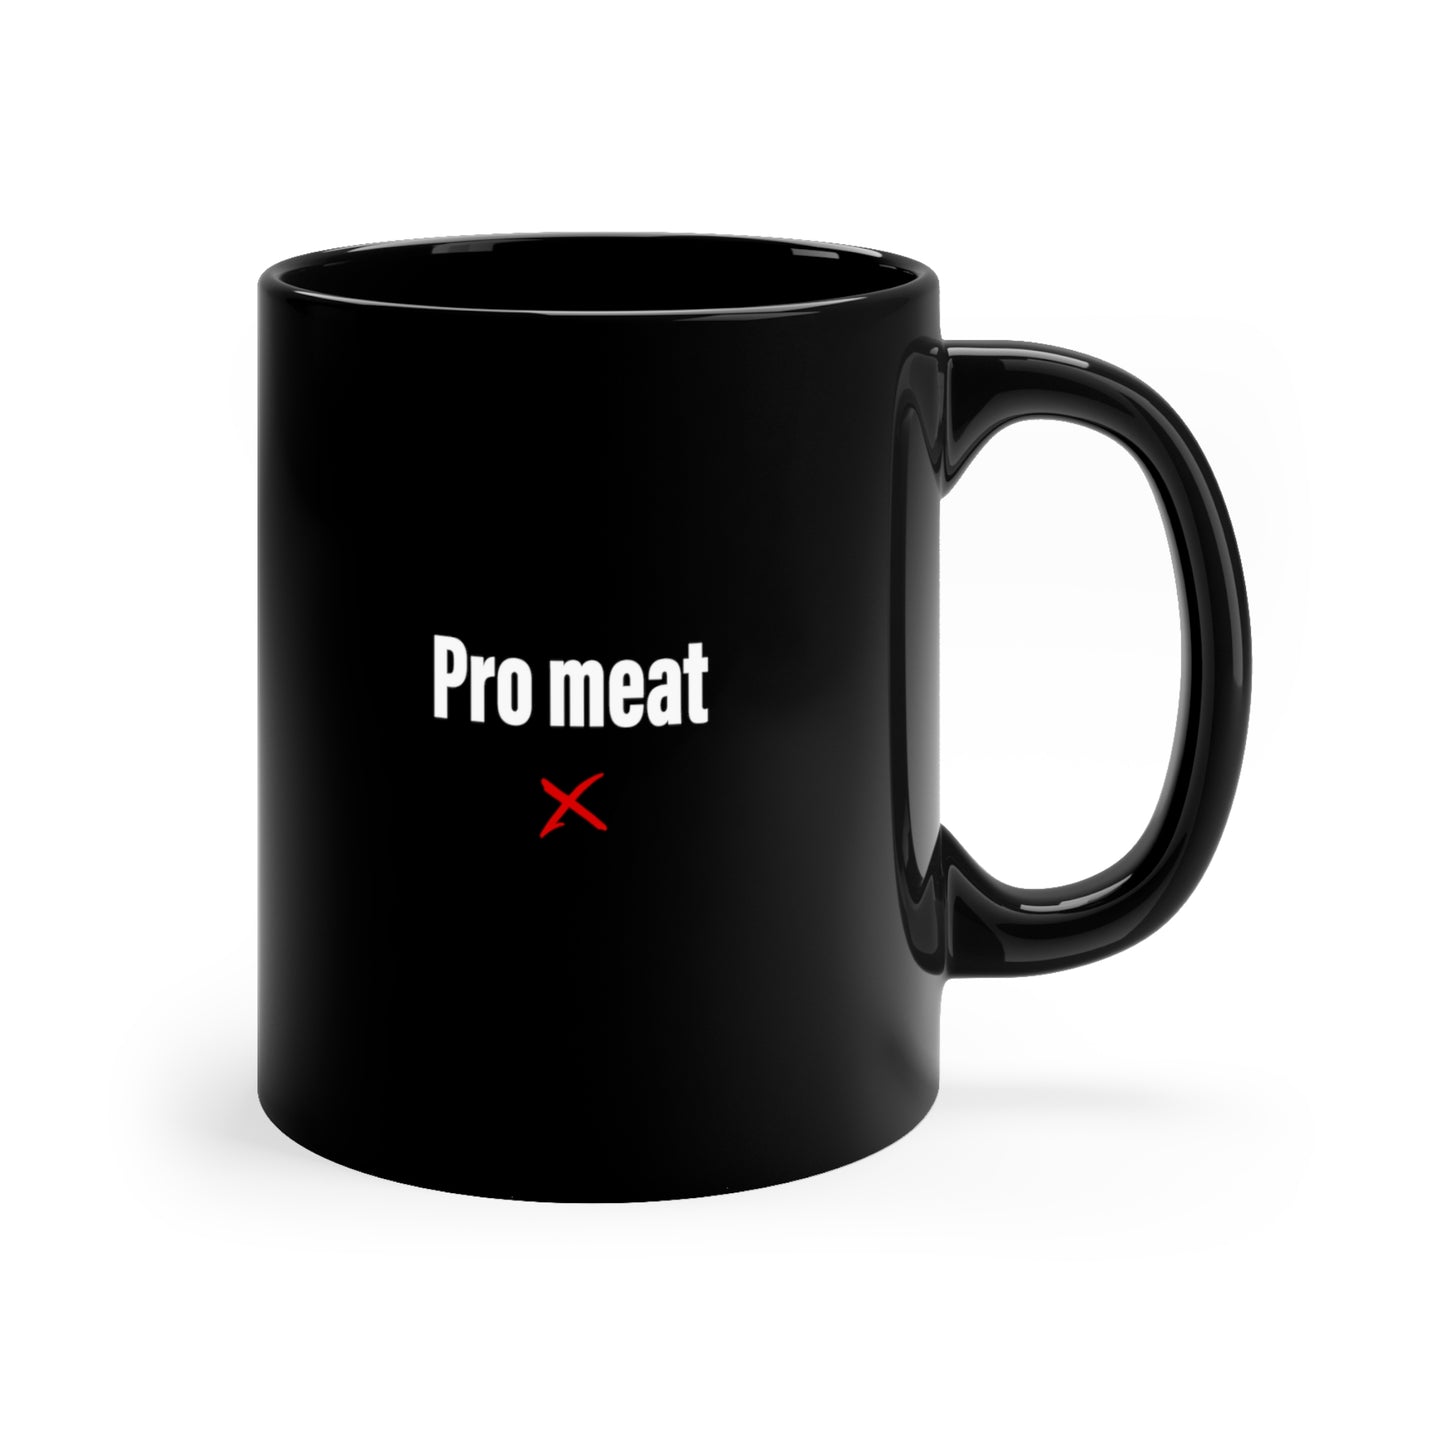 Pro meat - Mug